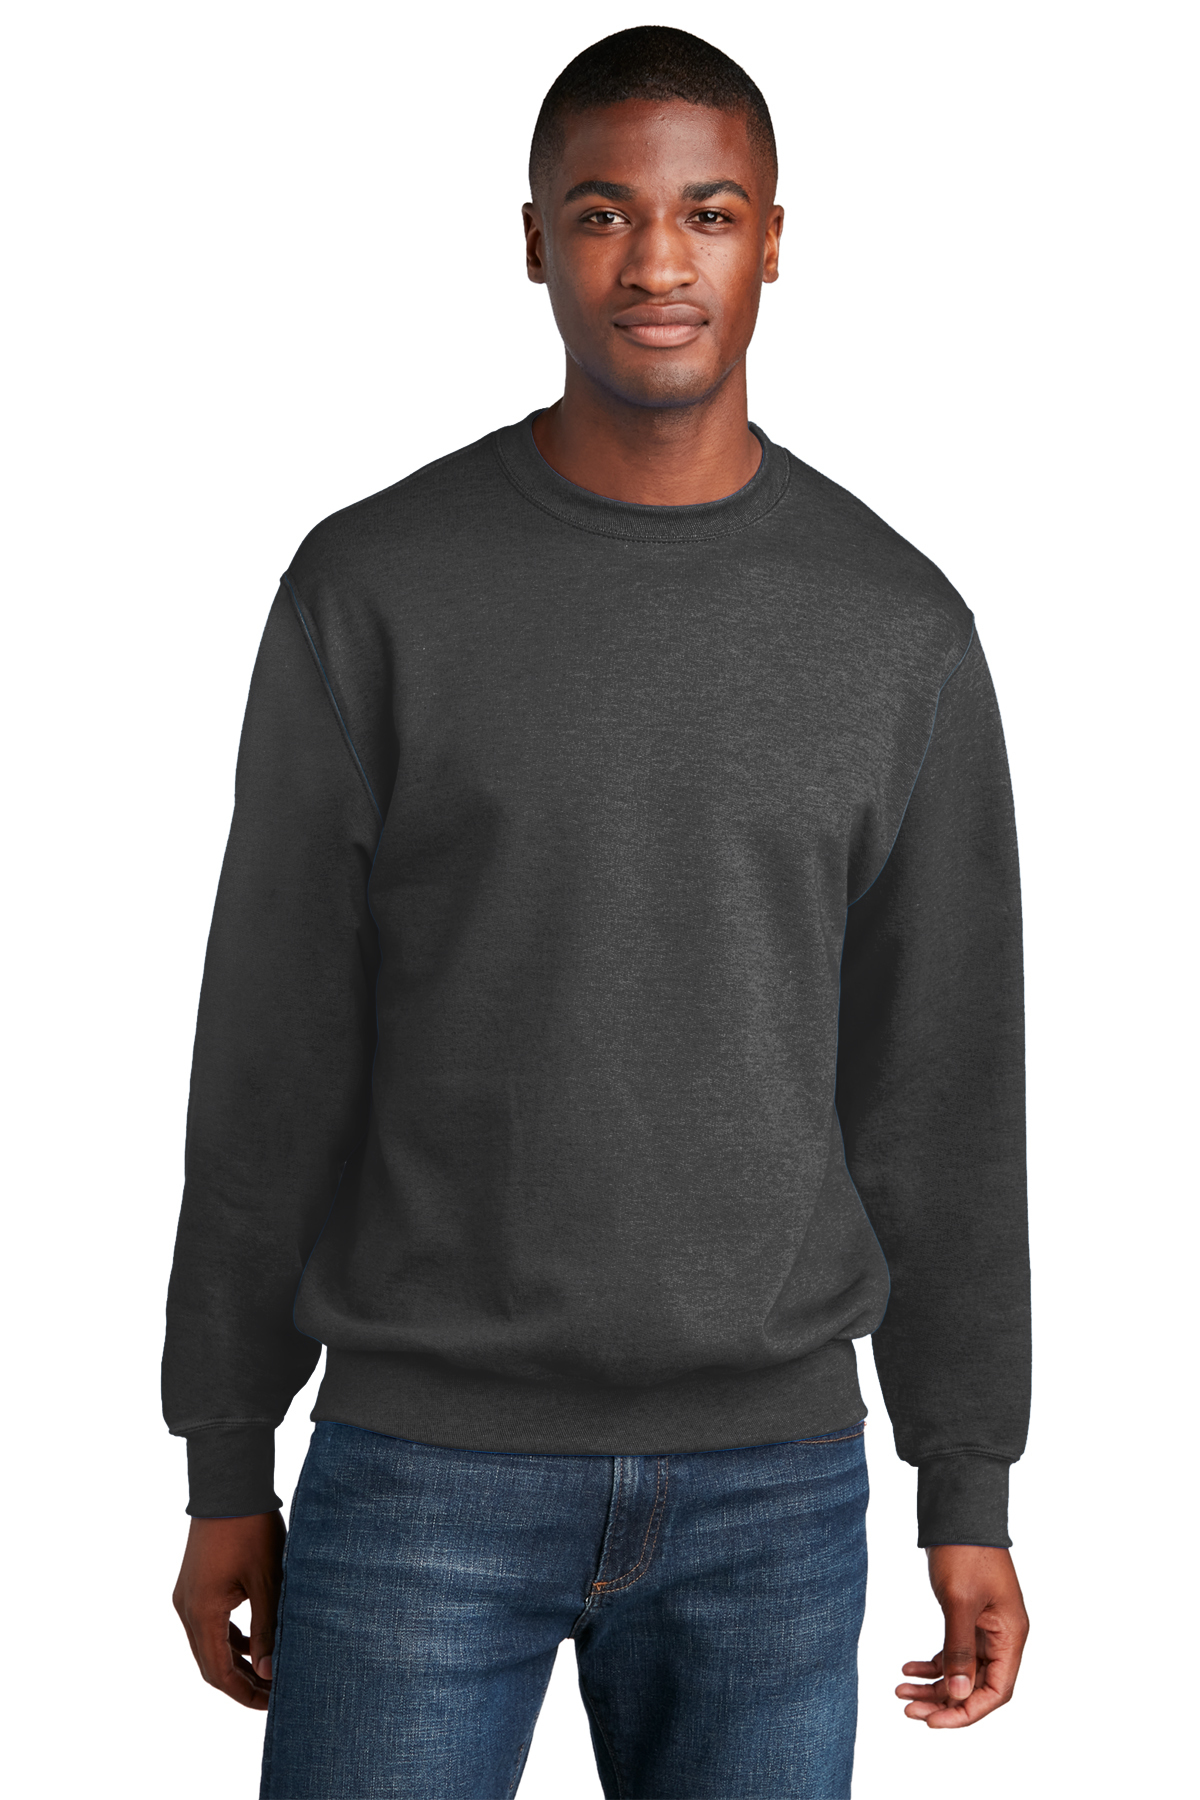 Port & Company Core Fleece Crewneck Sweatshirt | Product | SanMar